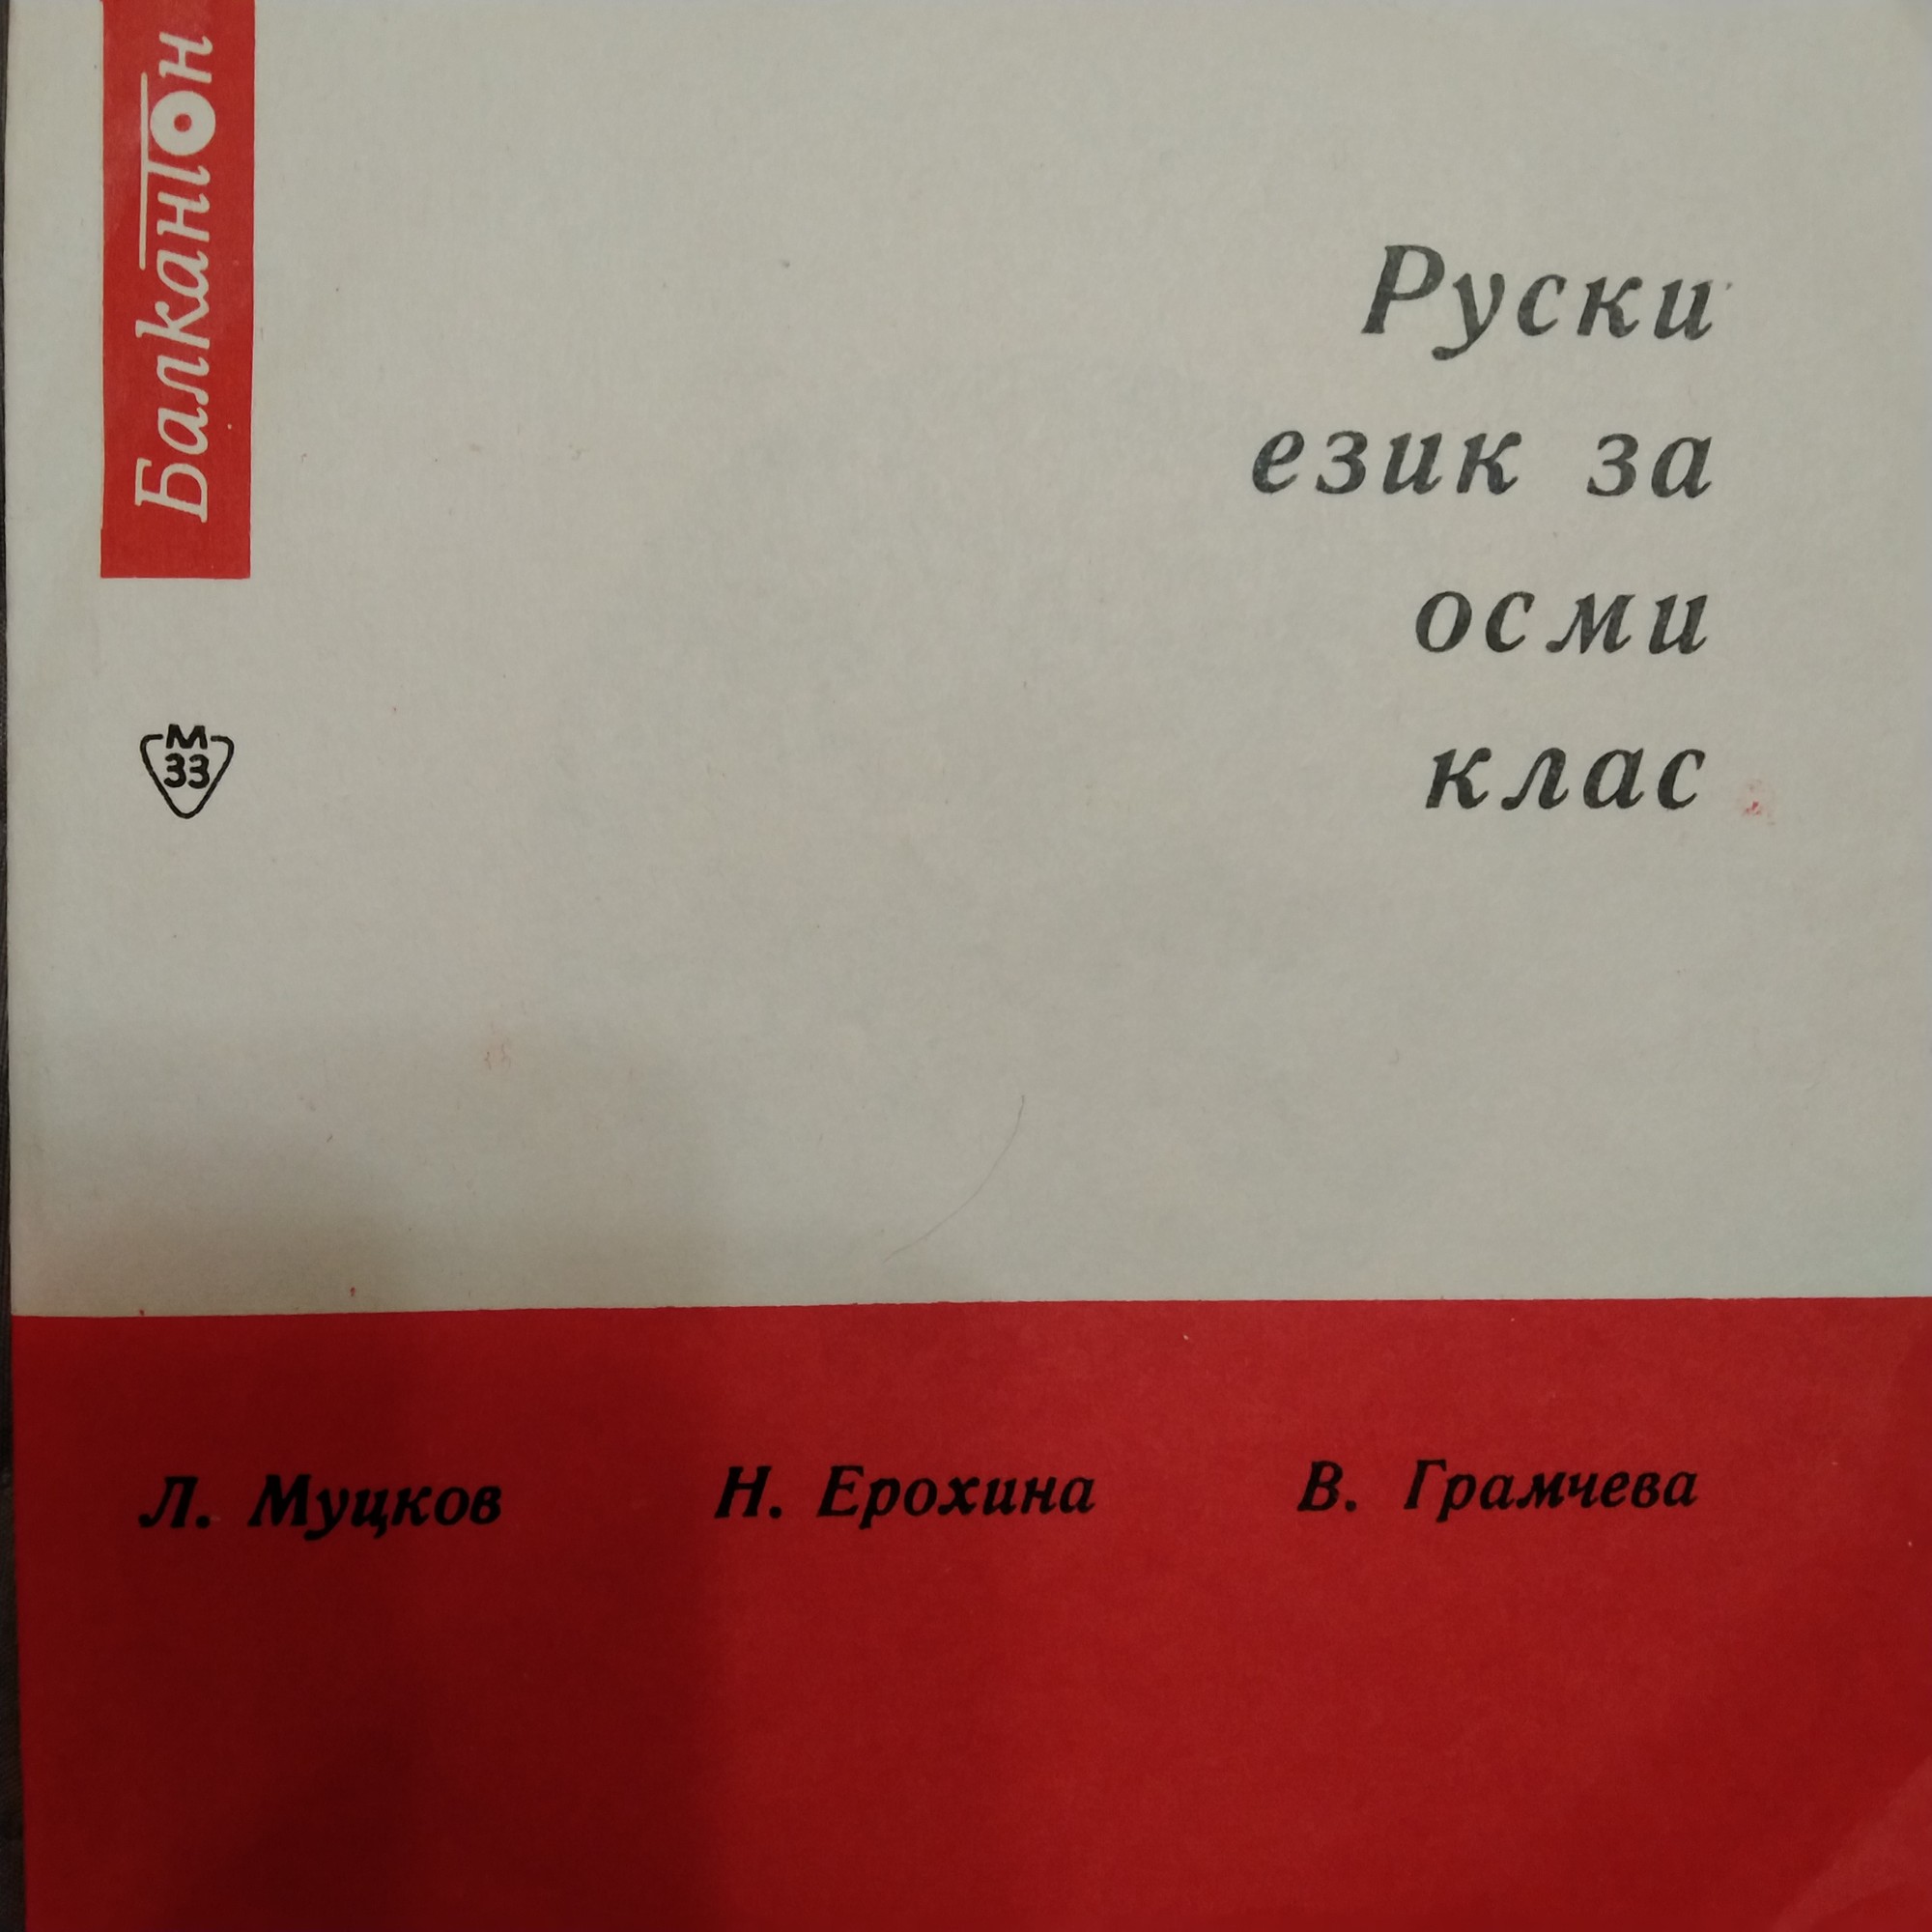 Руски език за VIII клас (авт. Л. Муцков, Н. Ерохина, В. Грамчева)